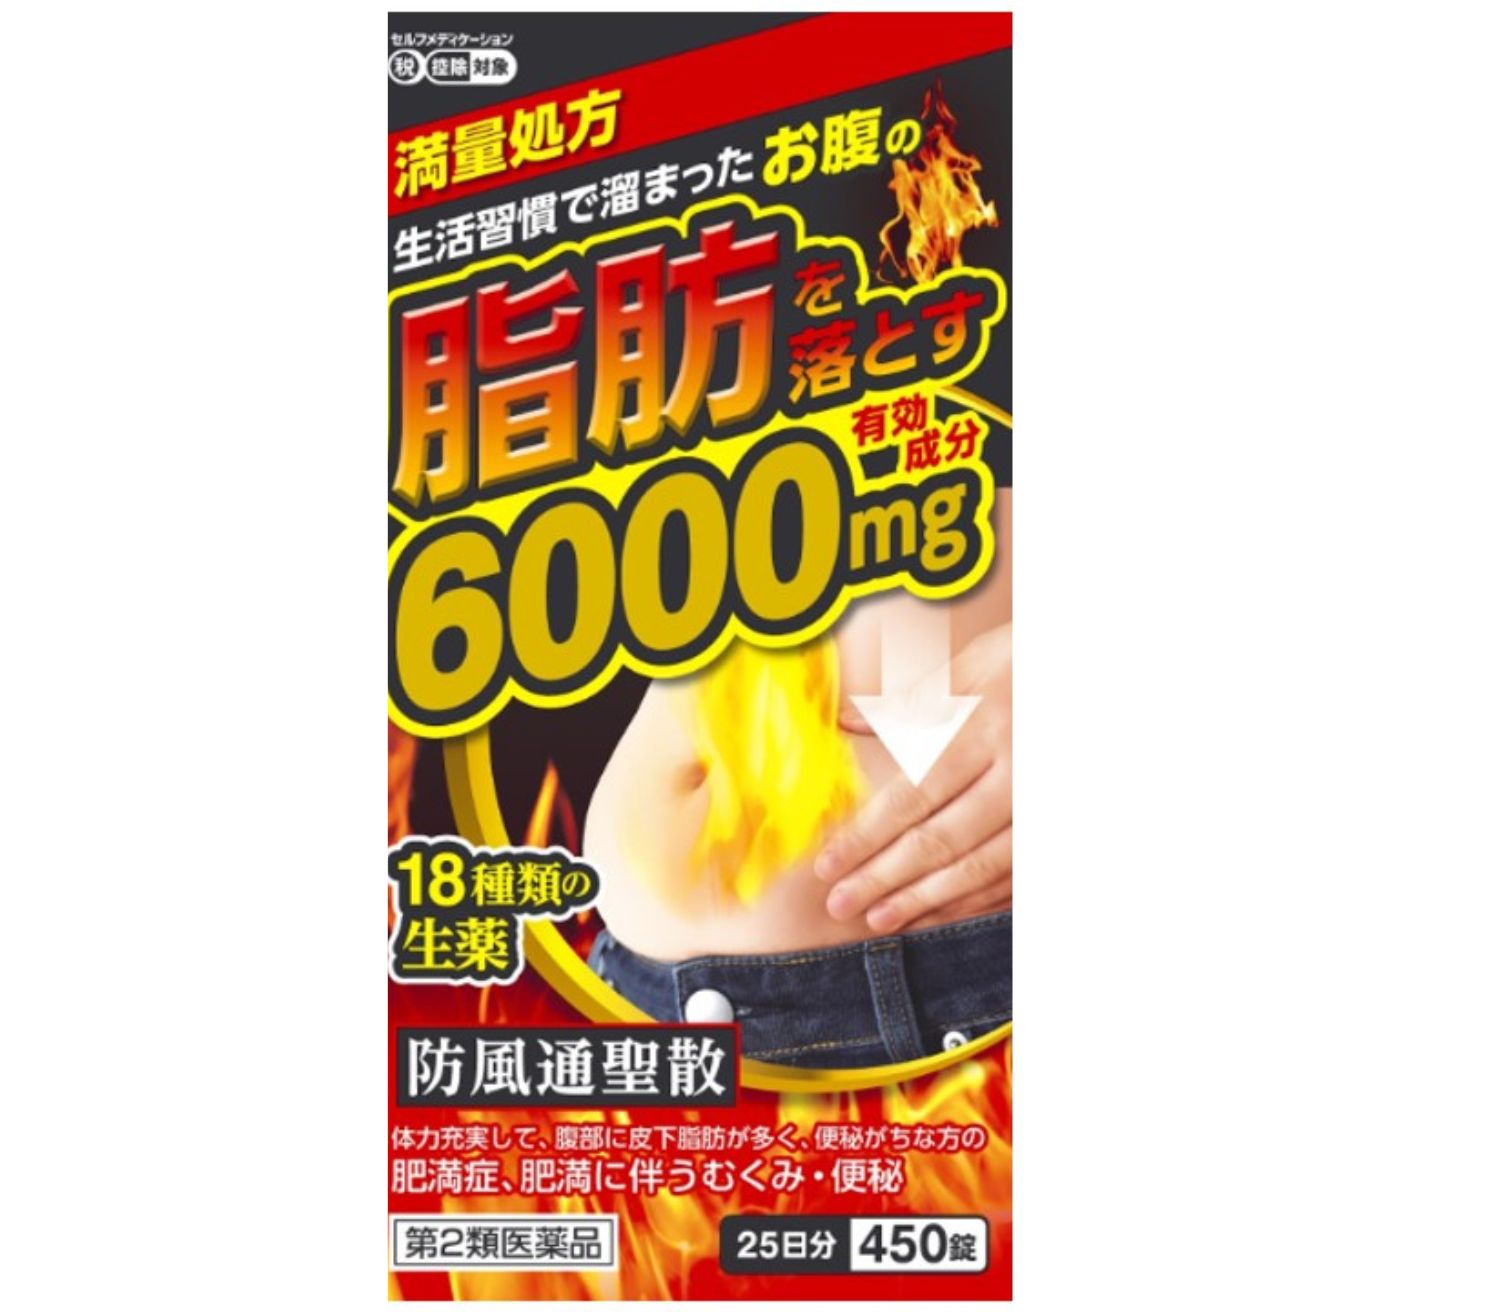 防風通聖散料エキス錠「至聖」 450錠 6000mg  北日本製薬 防風通聖散料エキス錠「至聖」 396錠のリニューアル品です